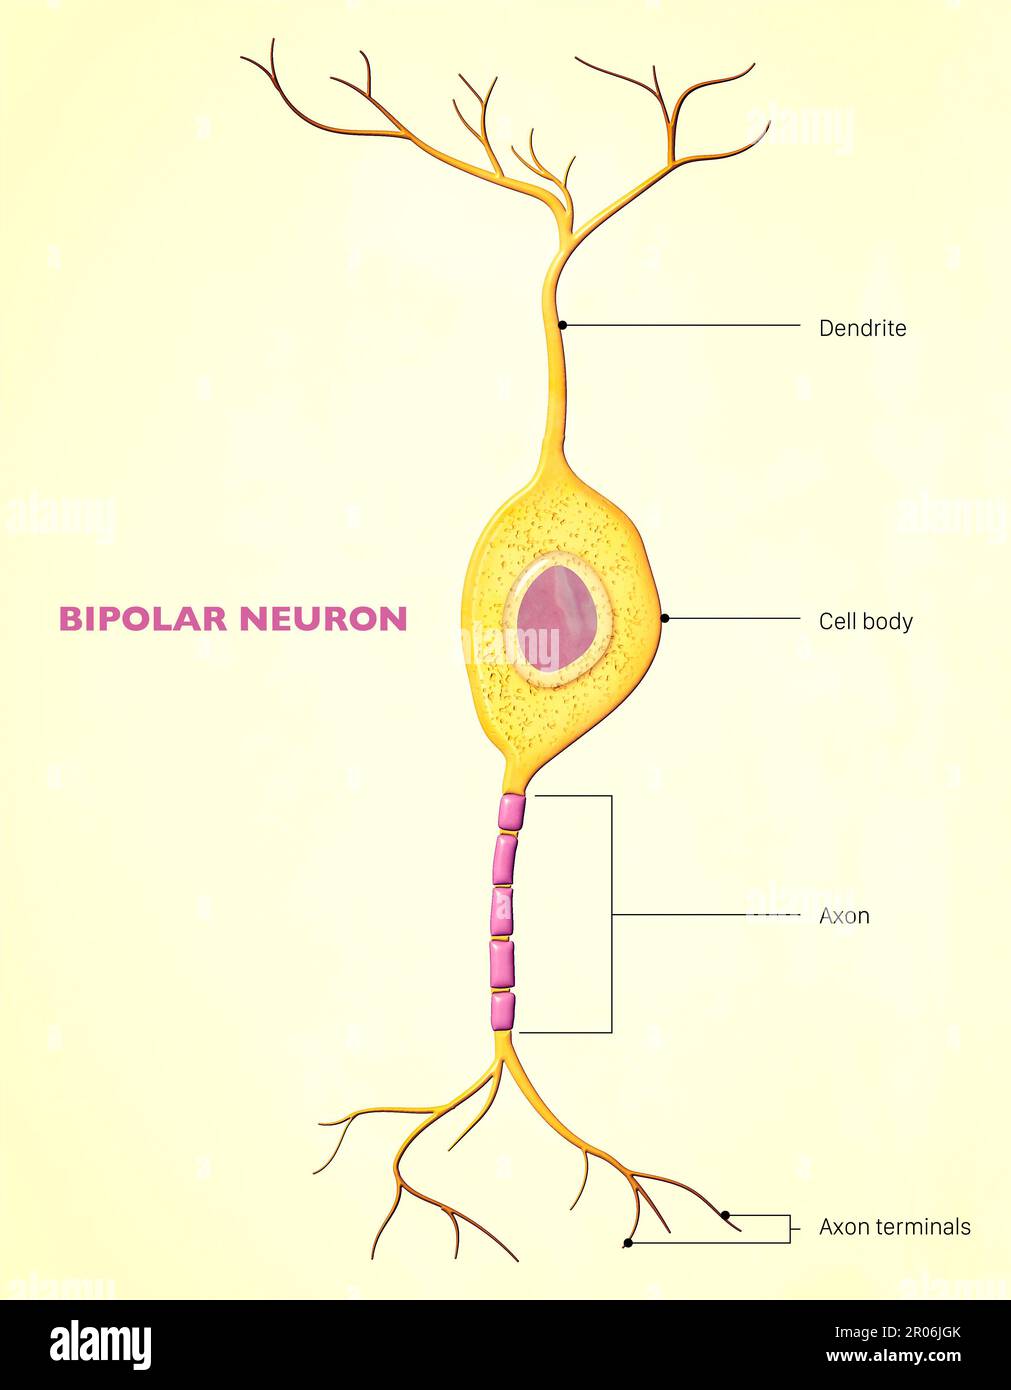 Un neurone bipolare, o cellula bipolare, è un tipo di neurone che ha due estensioni (un assone e un dendrite). Molte cellule bipolari sono sensoriali specializzate Foto Stock